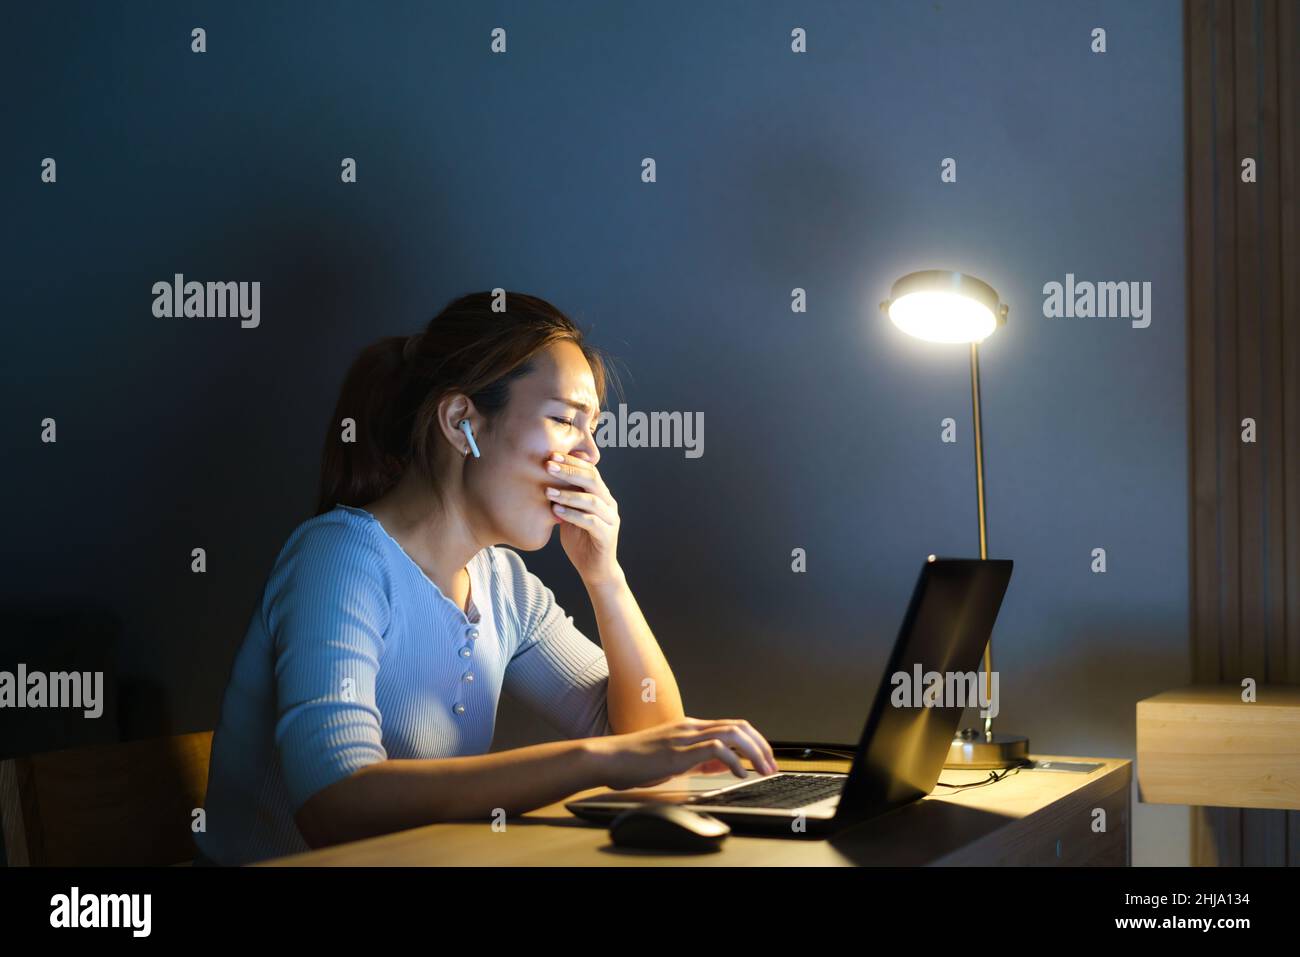 Femme d'affaires asiatique travaillant sur son ordinateur portable pour préparer la présentation demain matin le soir, elle avait l'air si somnolent et fatiguée qu'elle a hurlée Banque D'Images